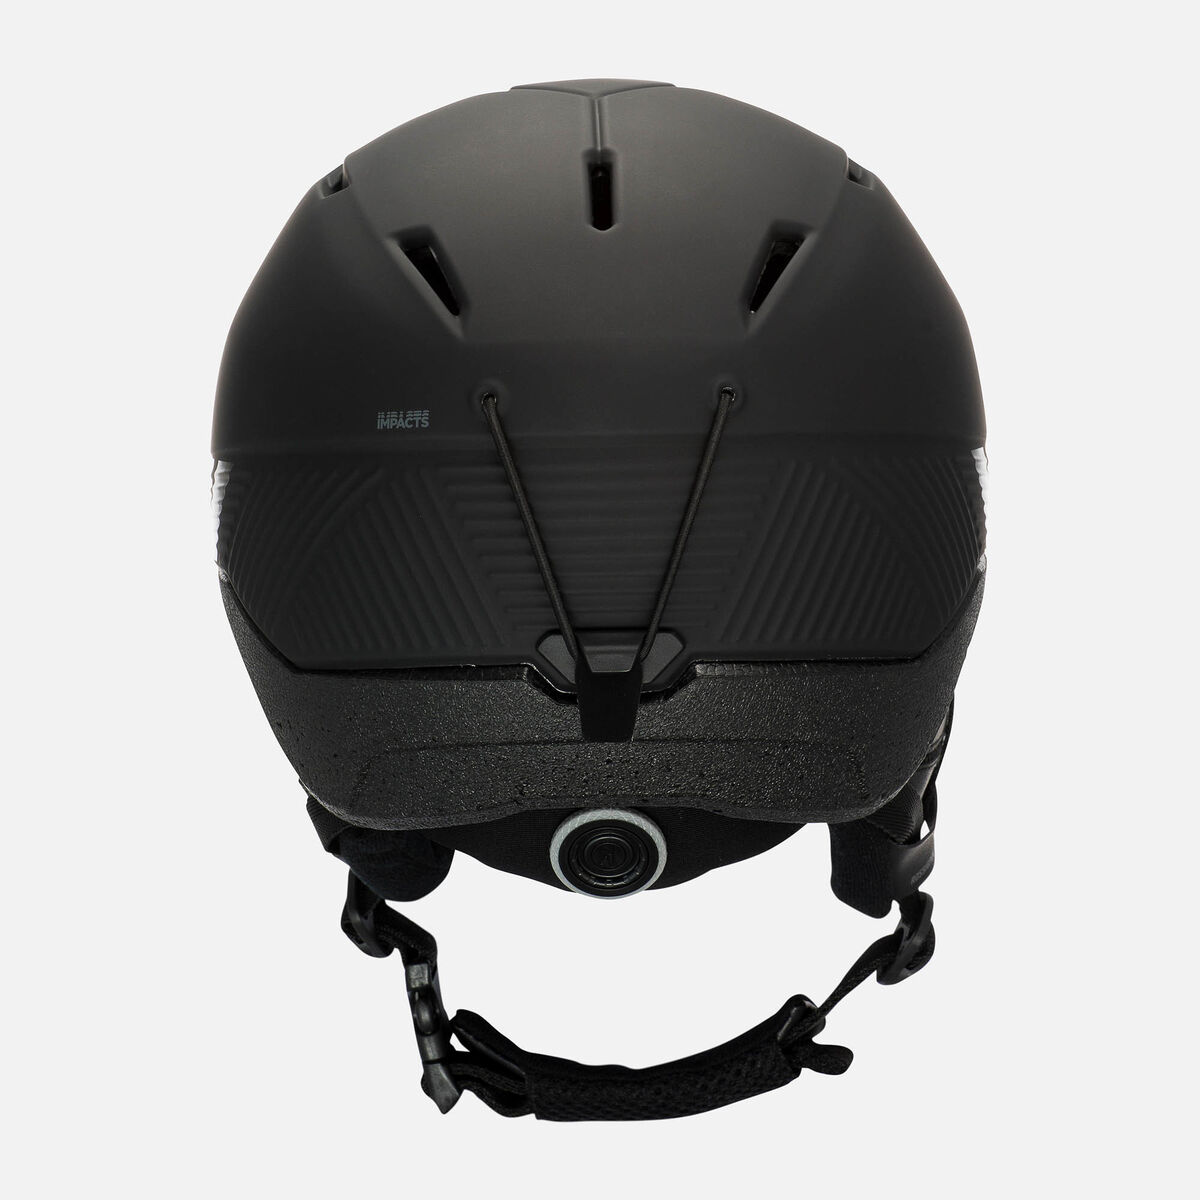 Grex R1 Helm inklusive Helmbeutel